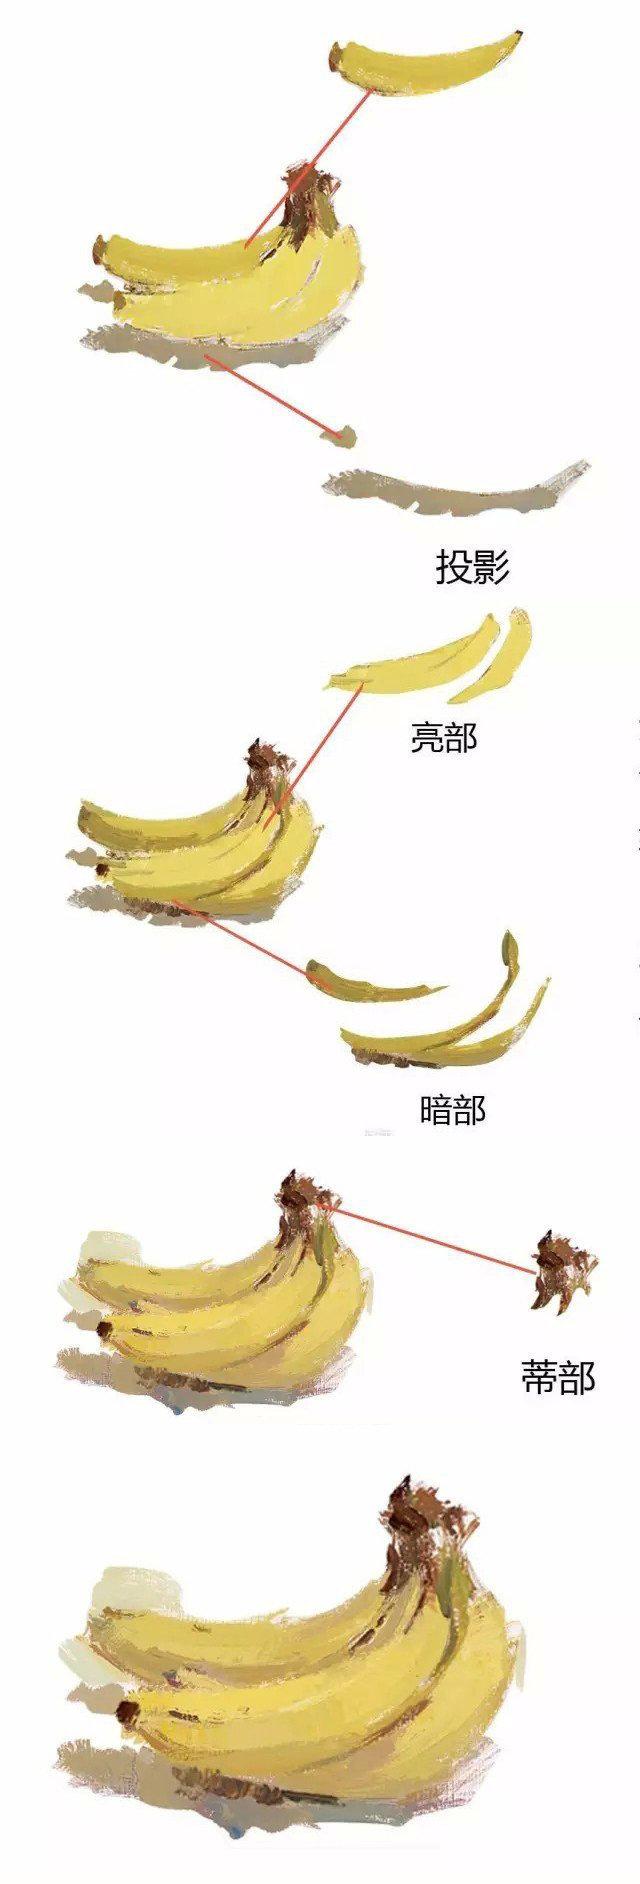 色彩静物单体香蕉的画法再画不好我就把你吃掉